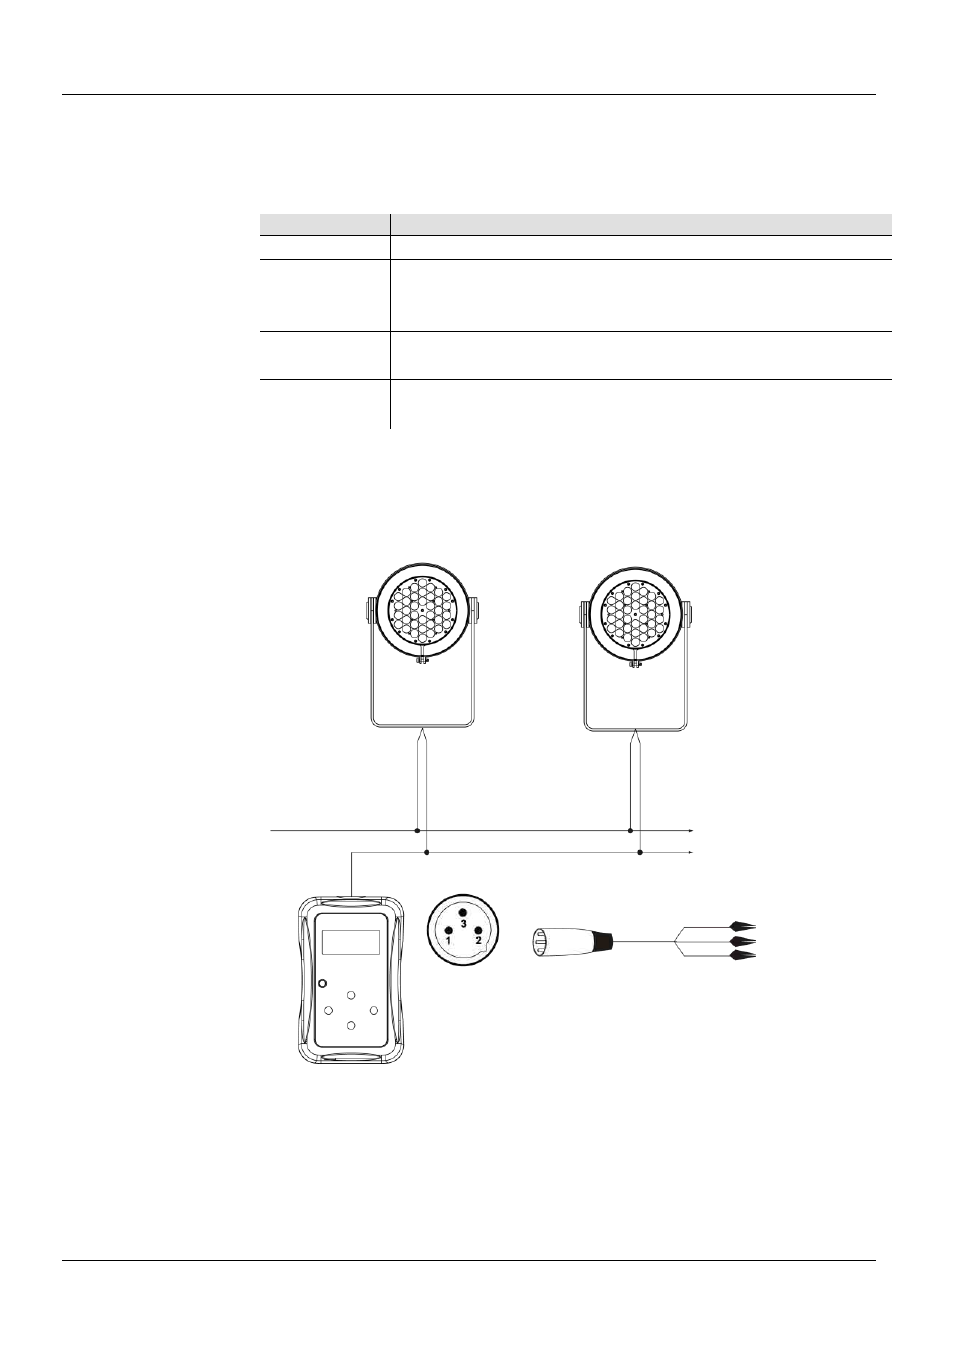 Controladores ilumicon y dmx, Descripción del panel de control ilumicode, Conexiones ilumicode | Diagrama de conexión ilumicode | ILUMINARC Ilumipod™ 36g2 IP User Manual | Page 13 / 28